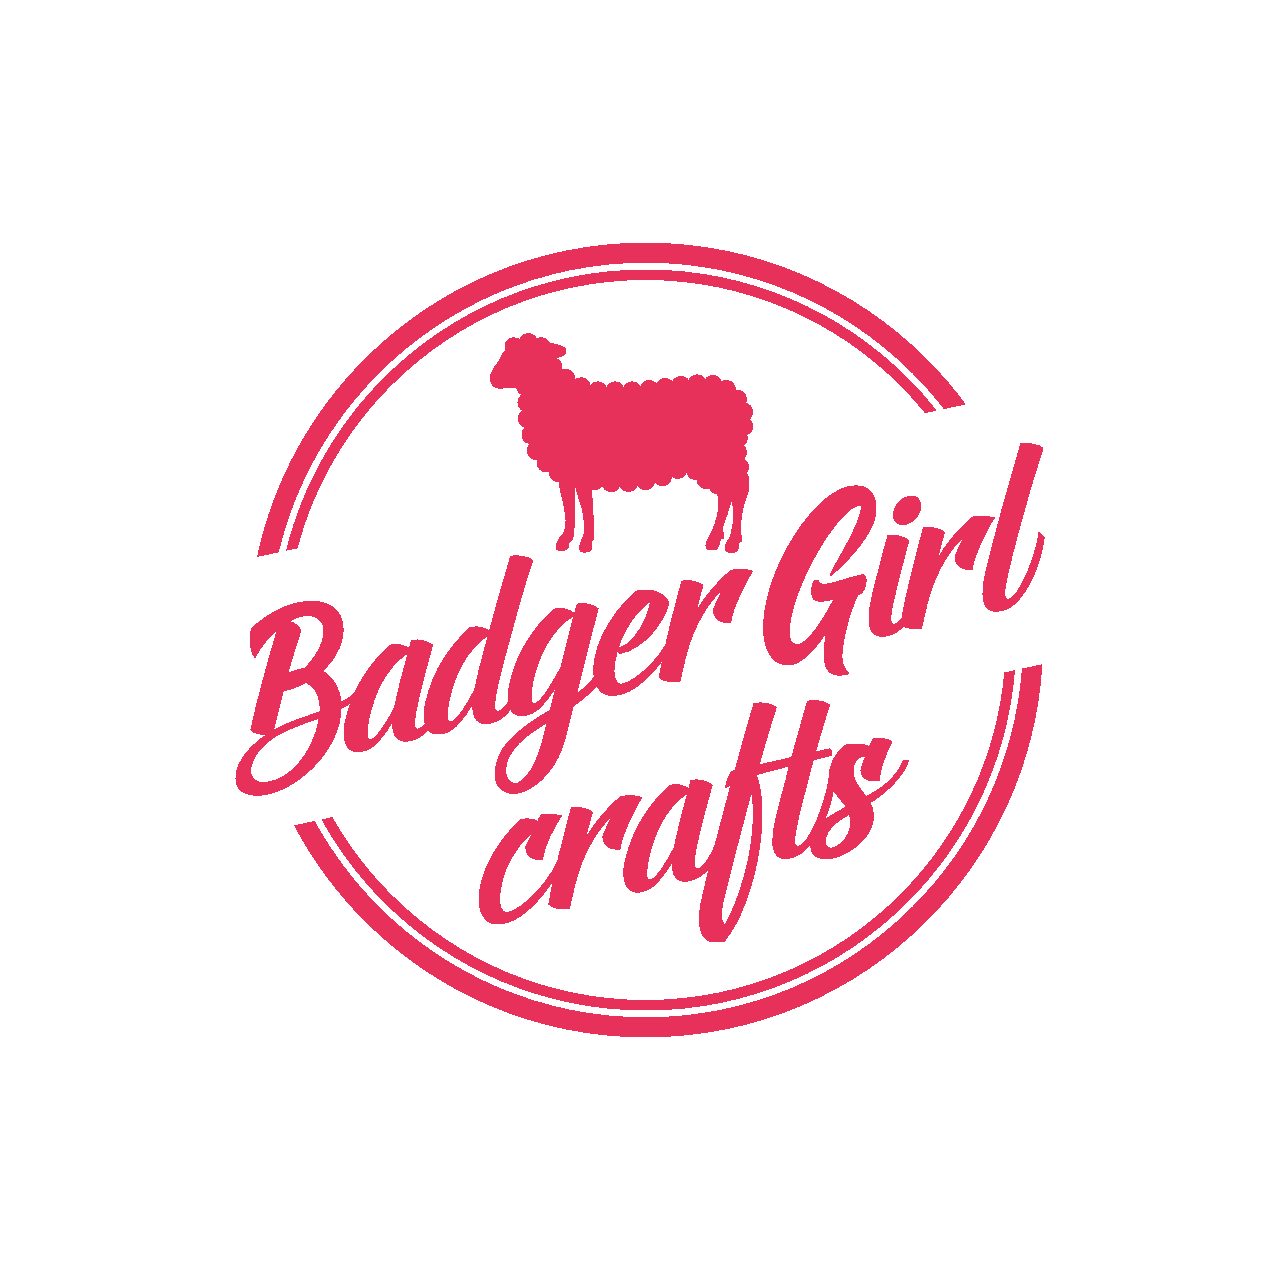 Badger Girl Crafts